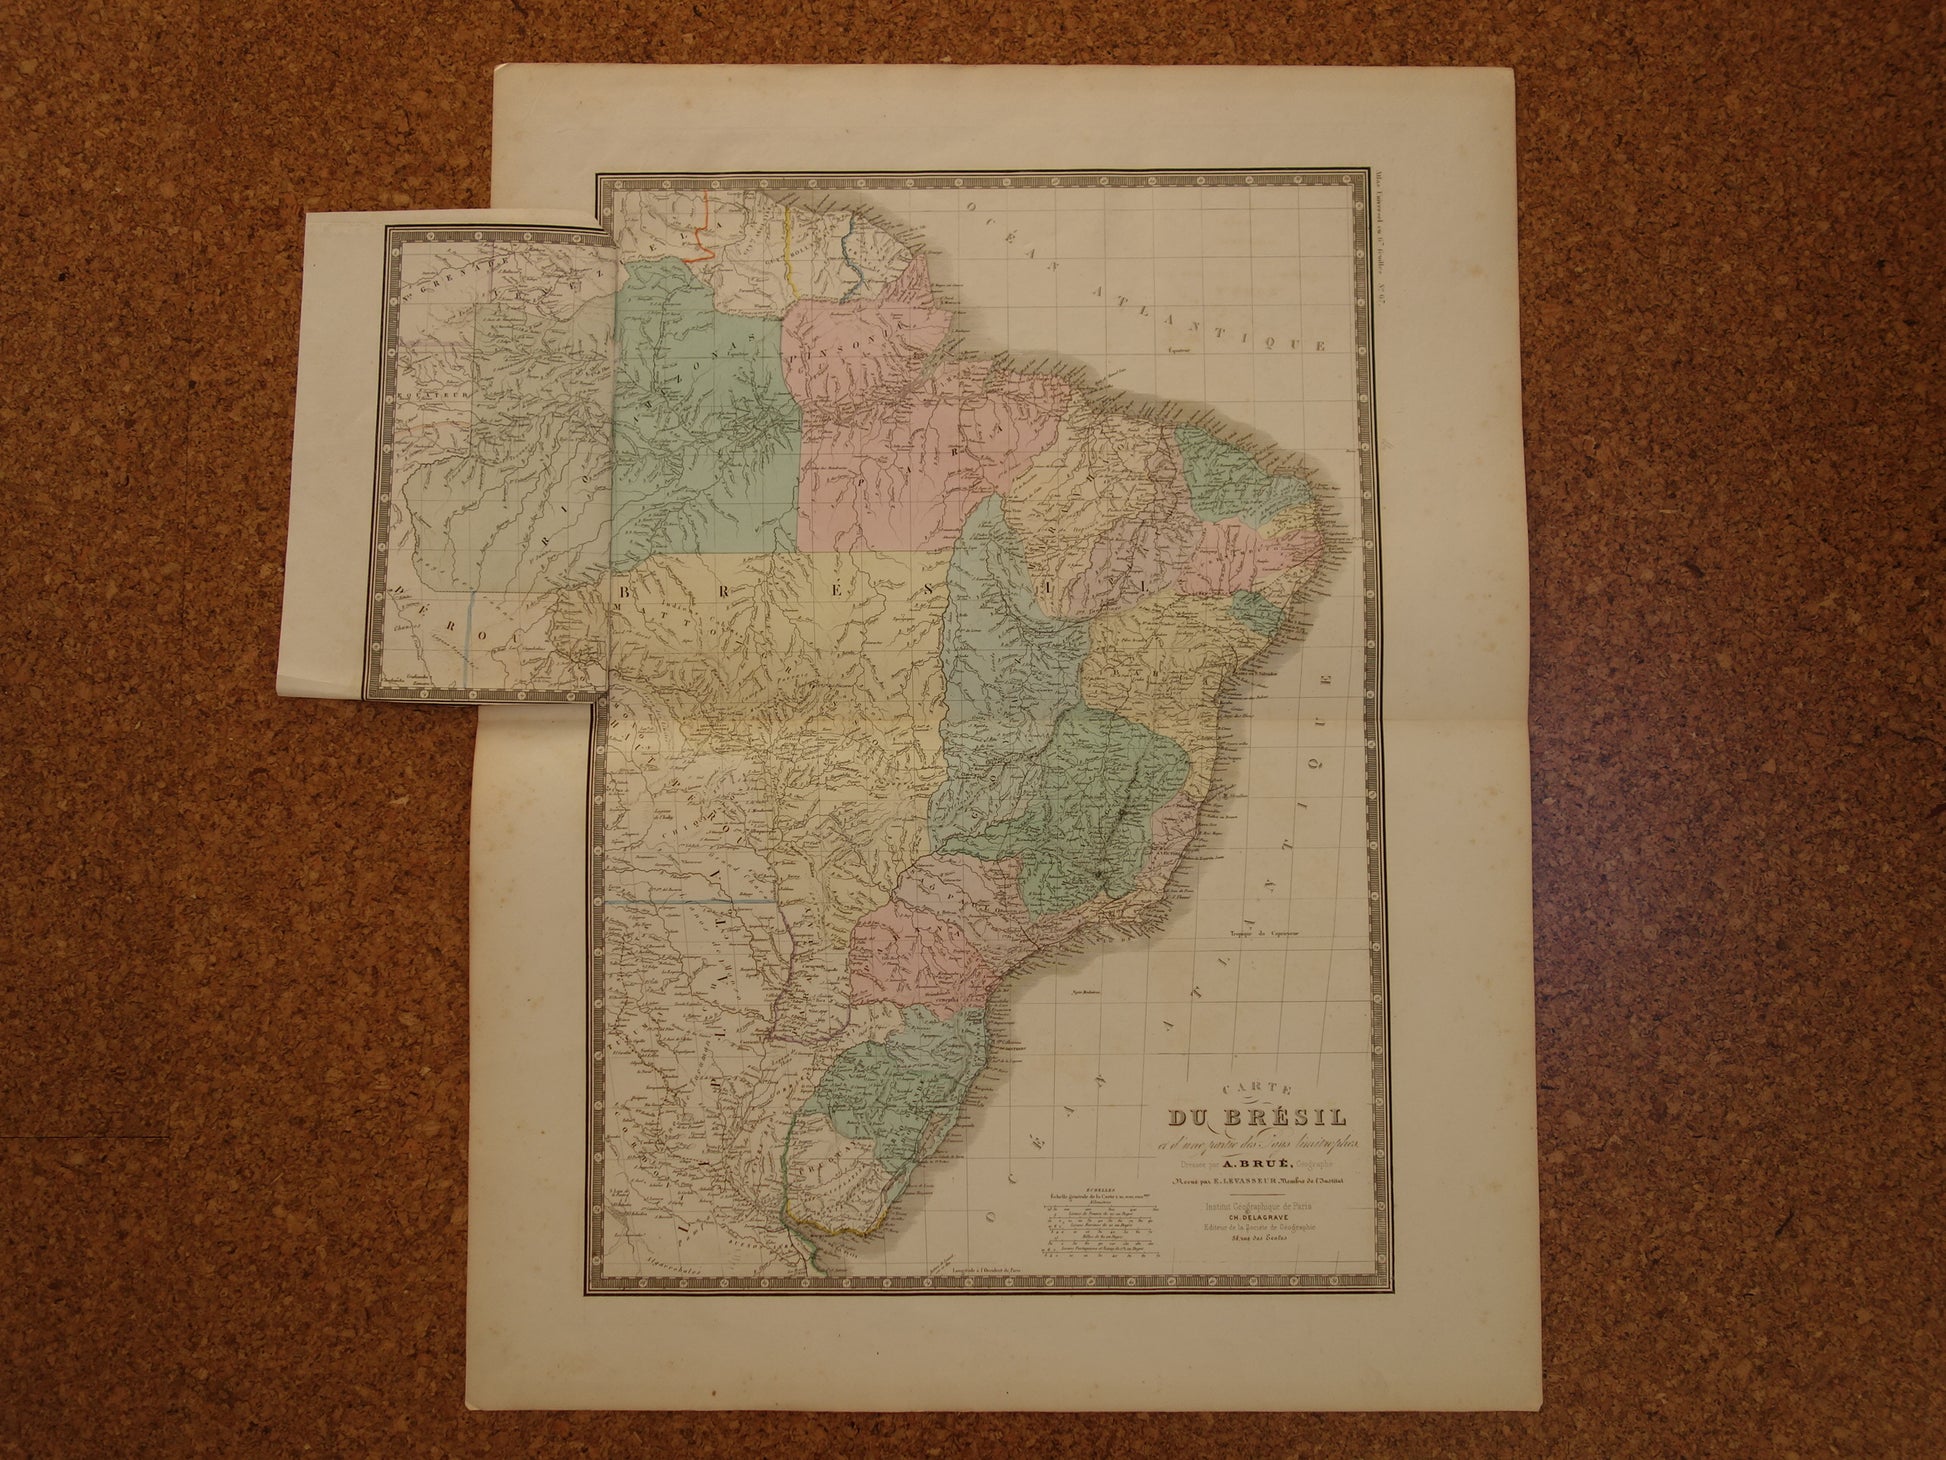 BRAZILIË Antieke kaart van Brazilië uit 1875 Originele oude grote landkaart vintage poster Rio de Janeiro 